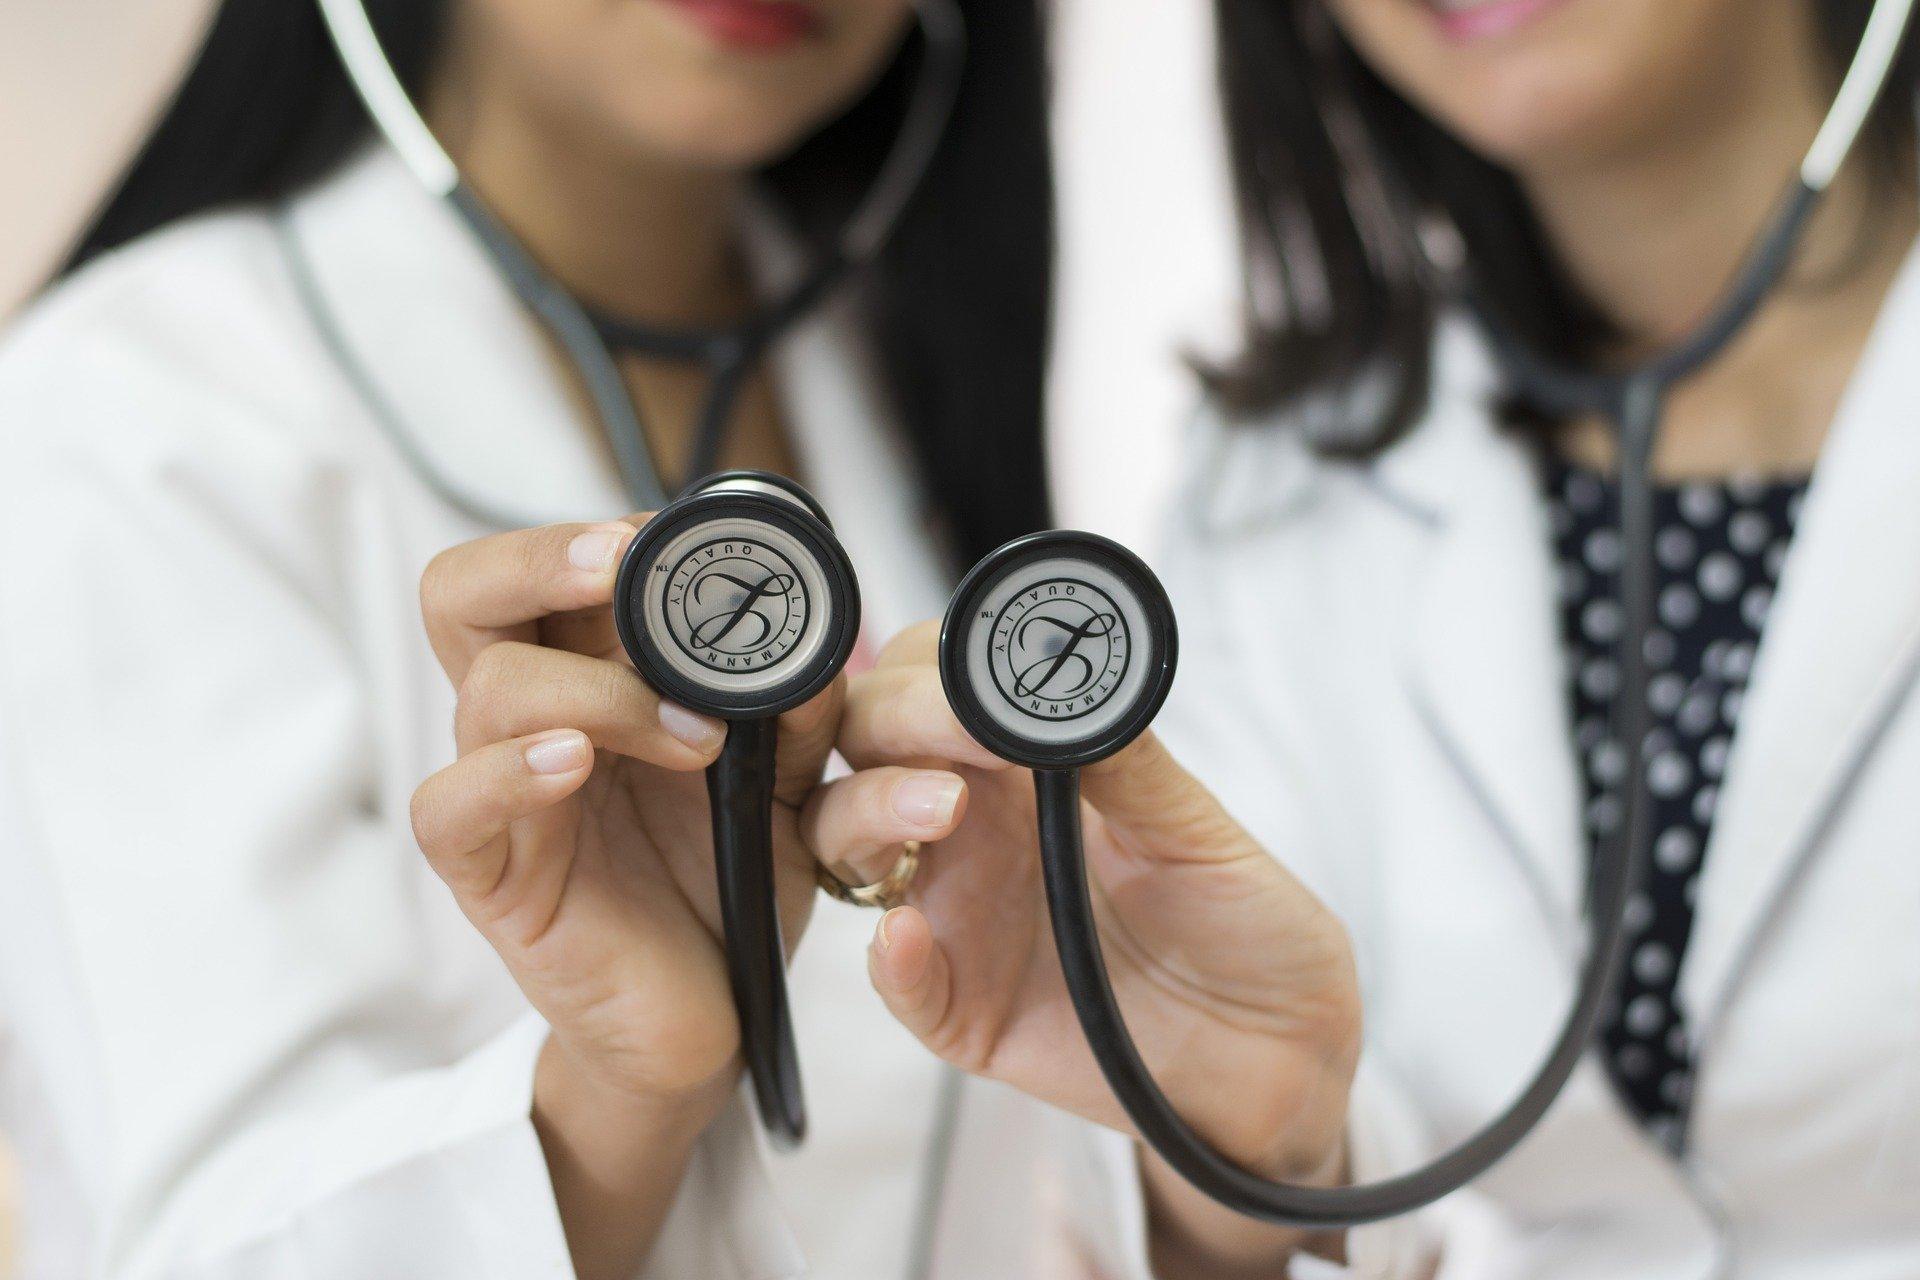 Bild Doktorinnen mit Stethoskop, Quelle: Bild von jennycepeda auf Pixabay